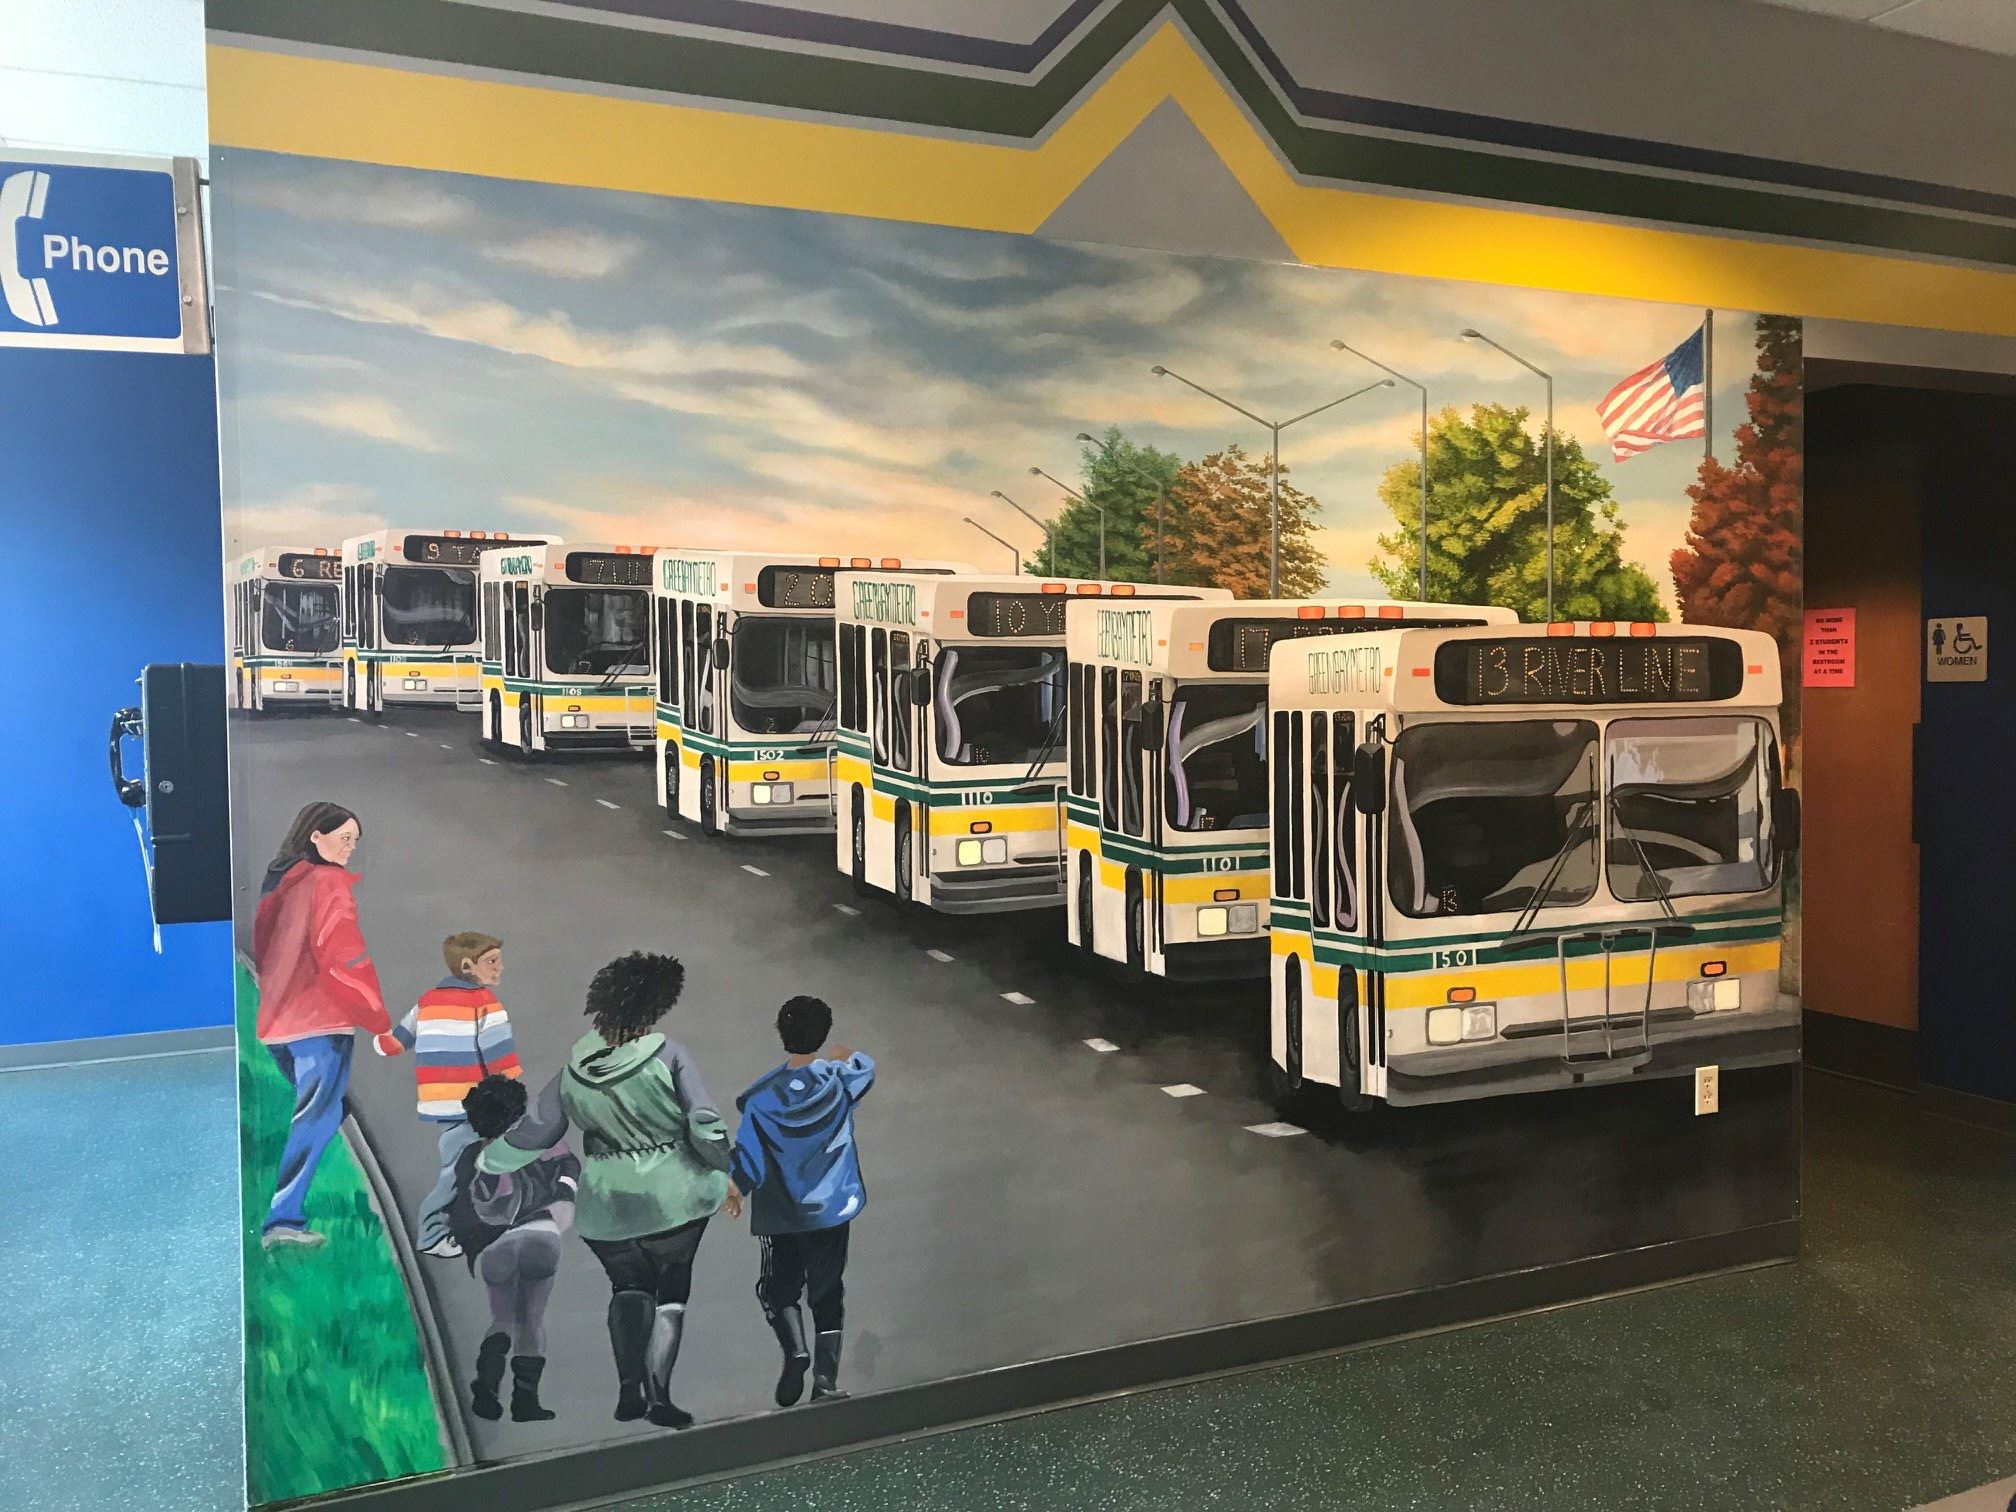 Bus Mural